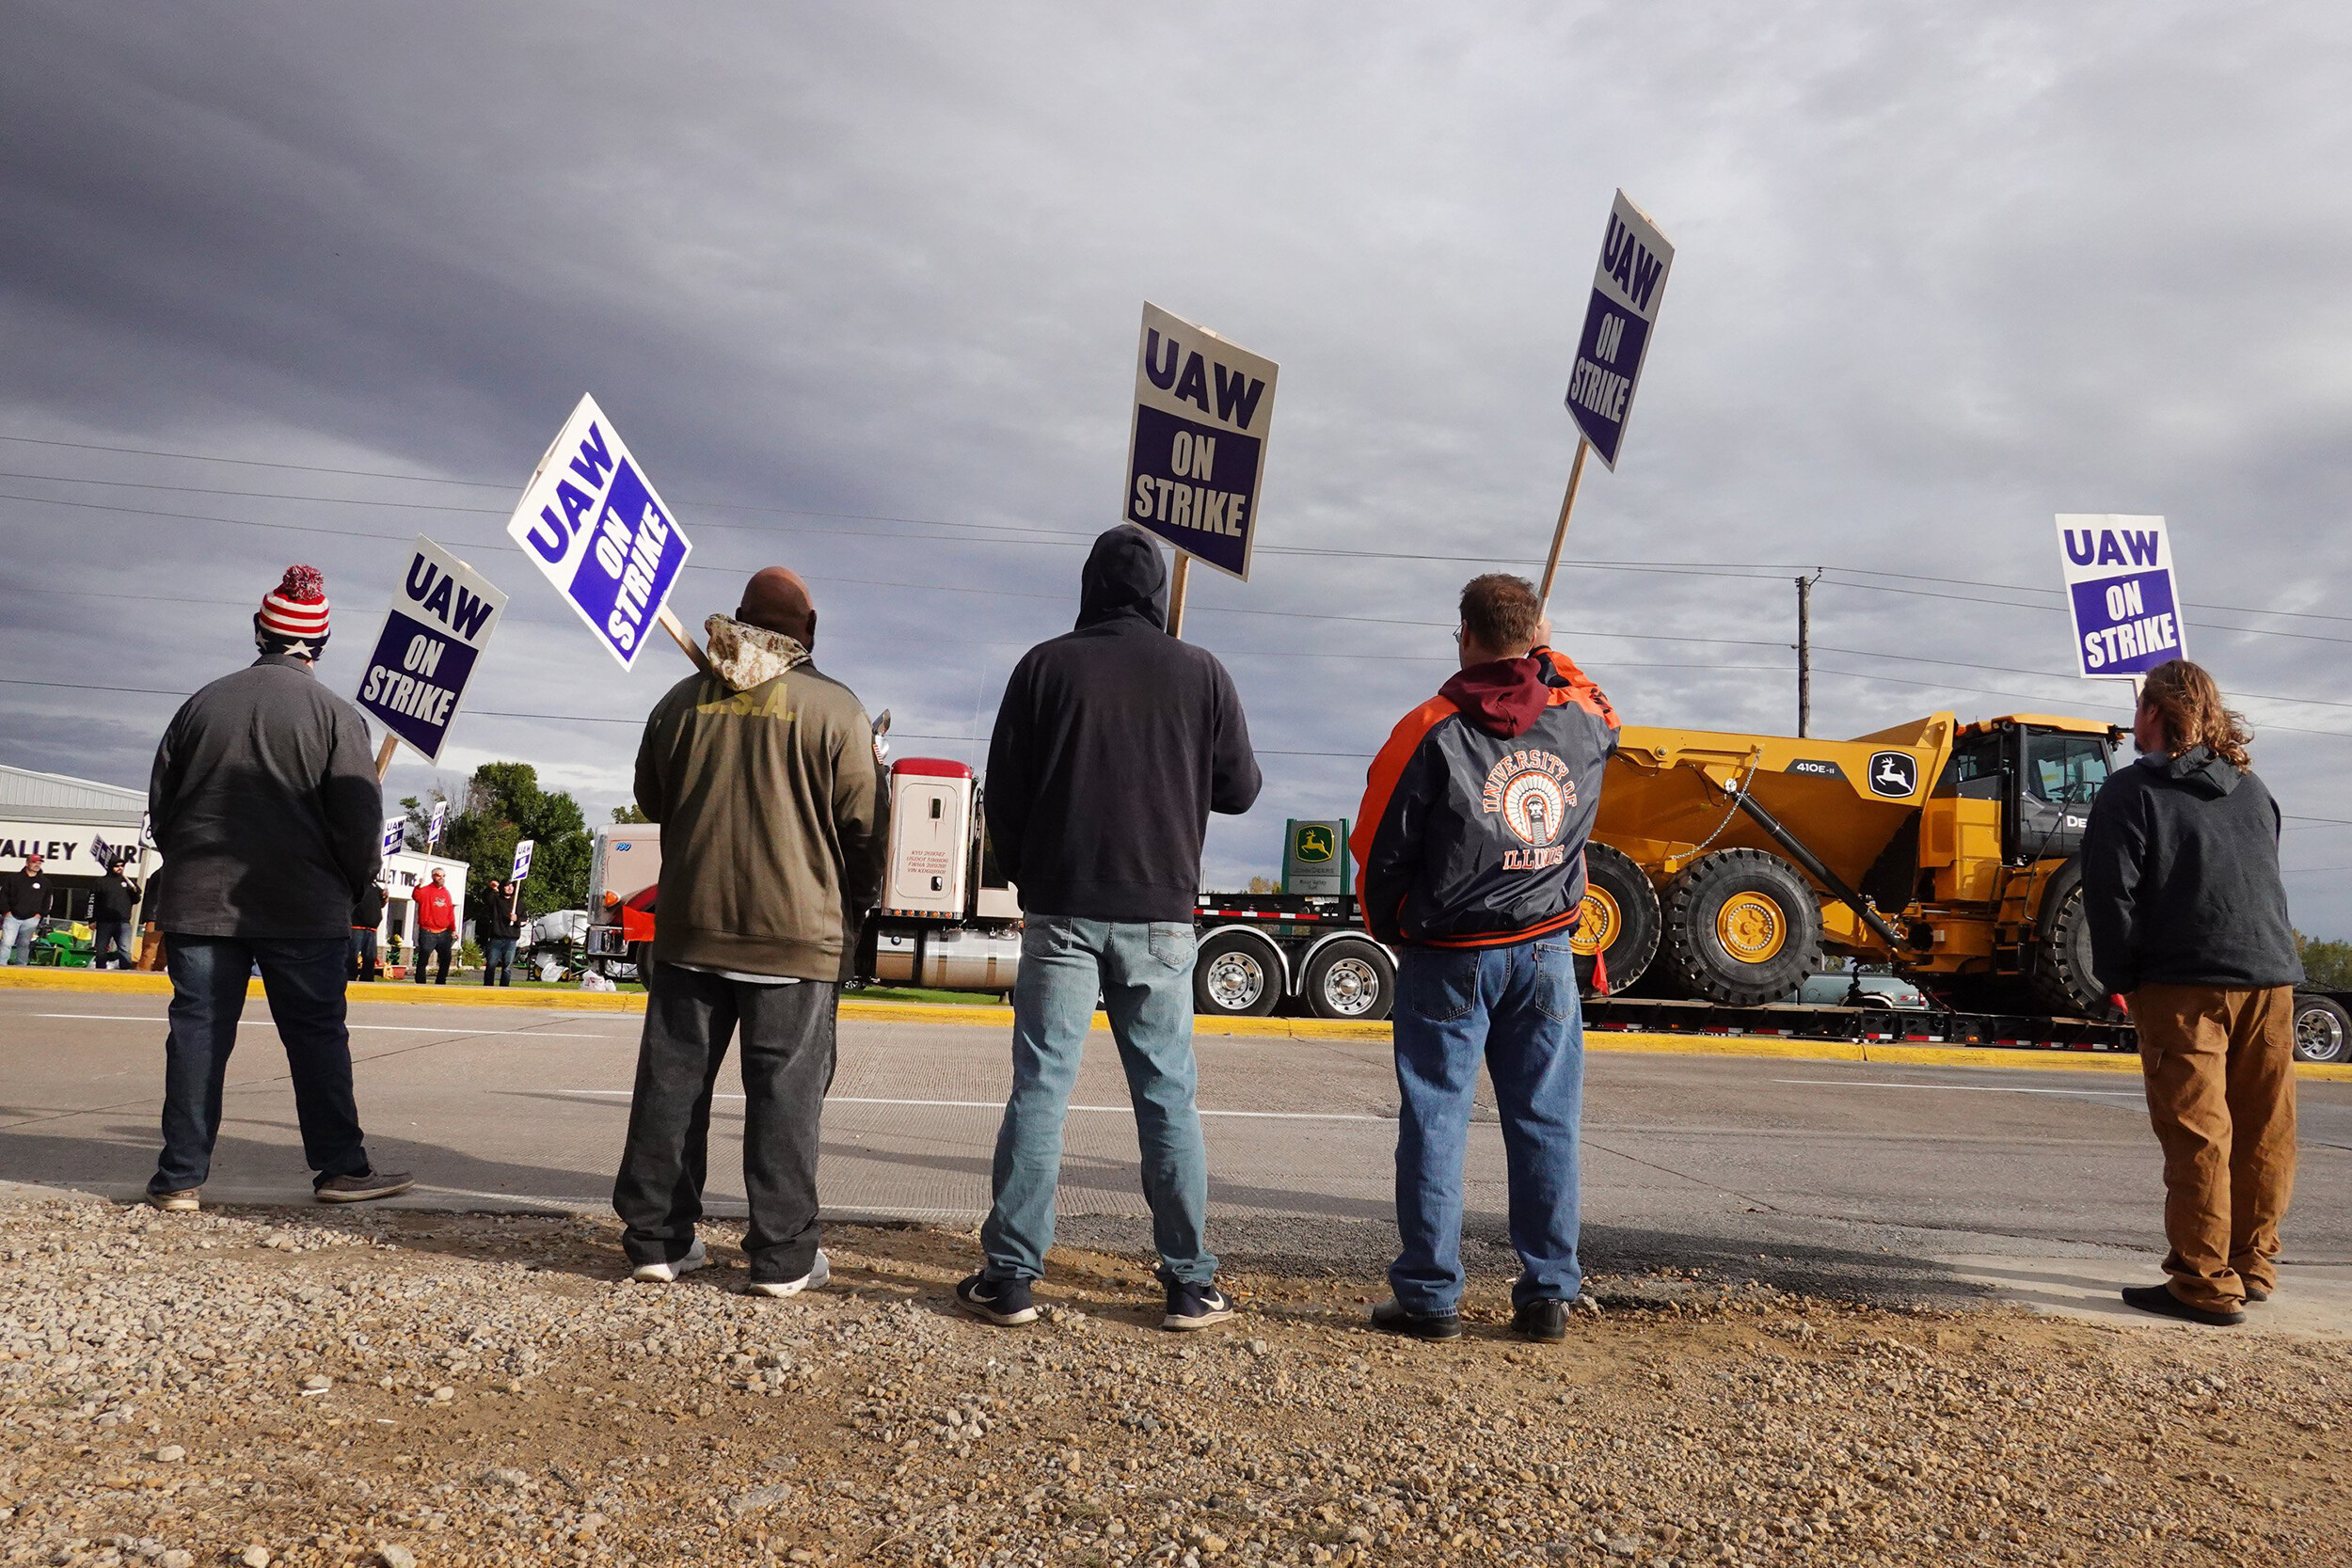 تزايد في حالات اضراب العمال في امريكا